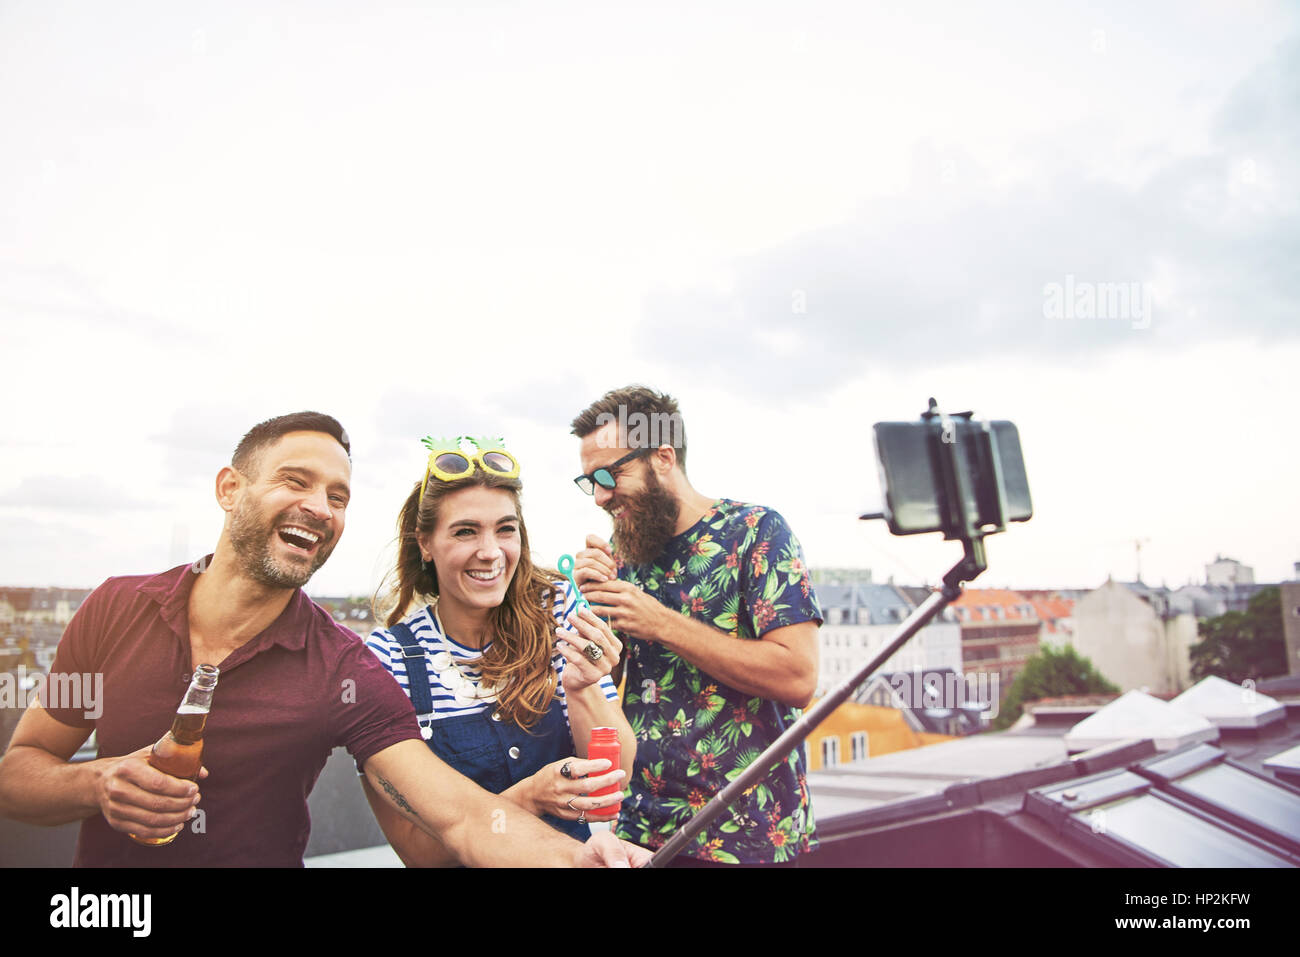 Drei glückliche Freunde fotografieren sich auf Dach beim trinken Bier und Seifenblasen Stockfoto